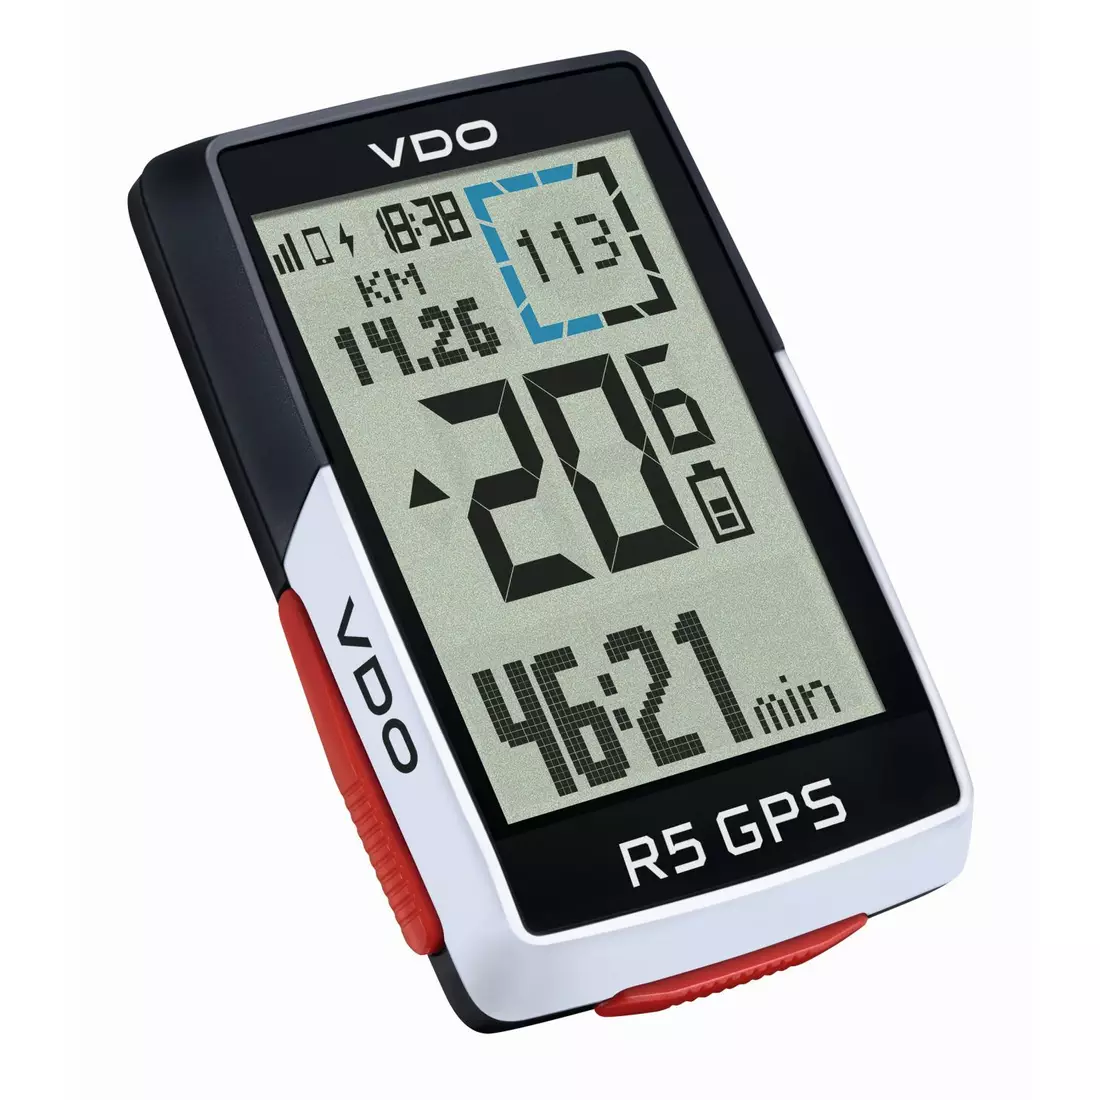 VDO R5 GPS FULL SET bezprzewodowy licznik rowerowy